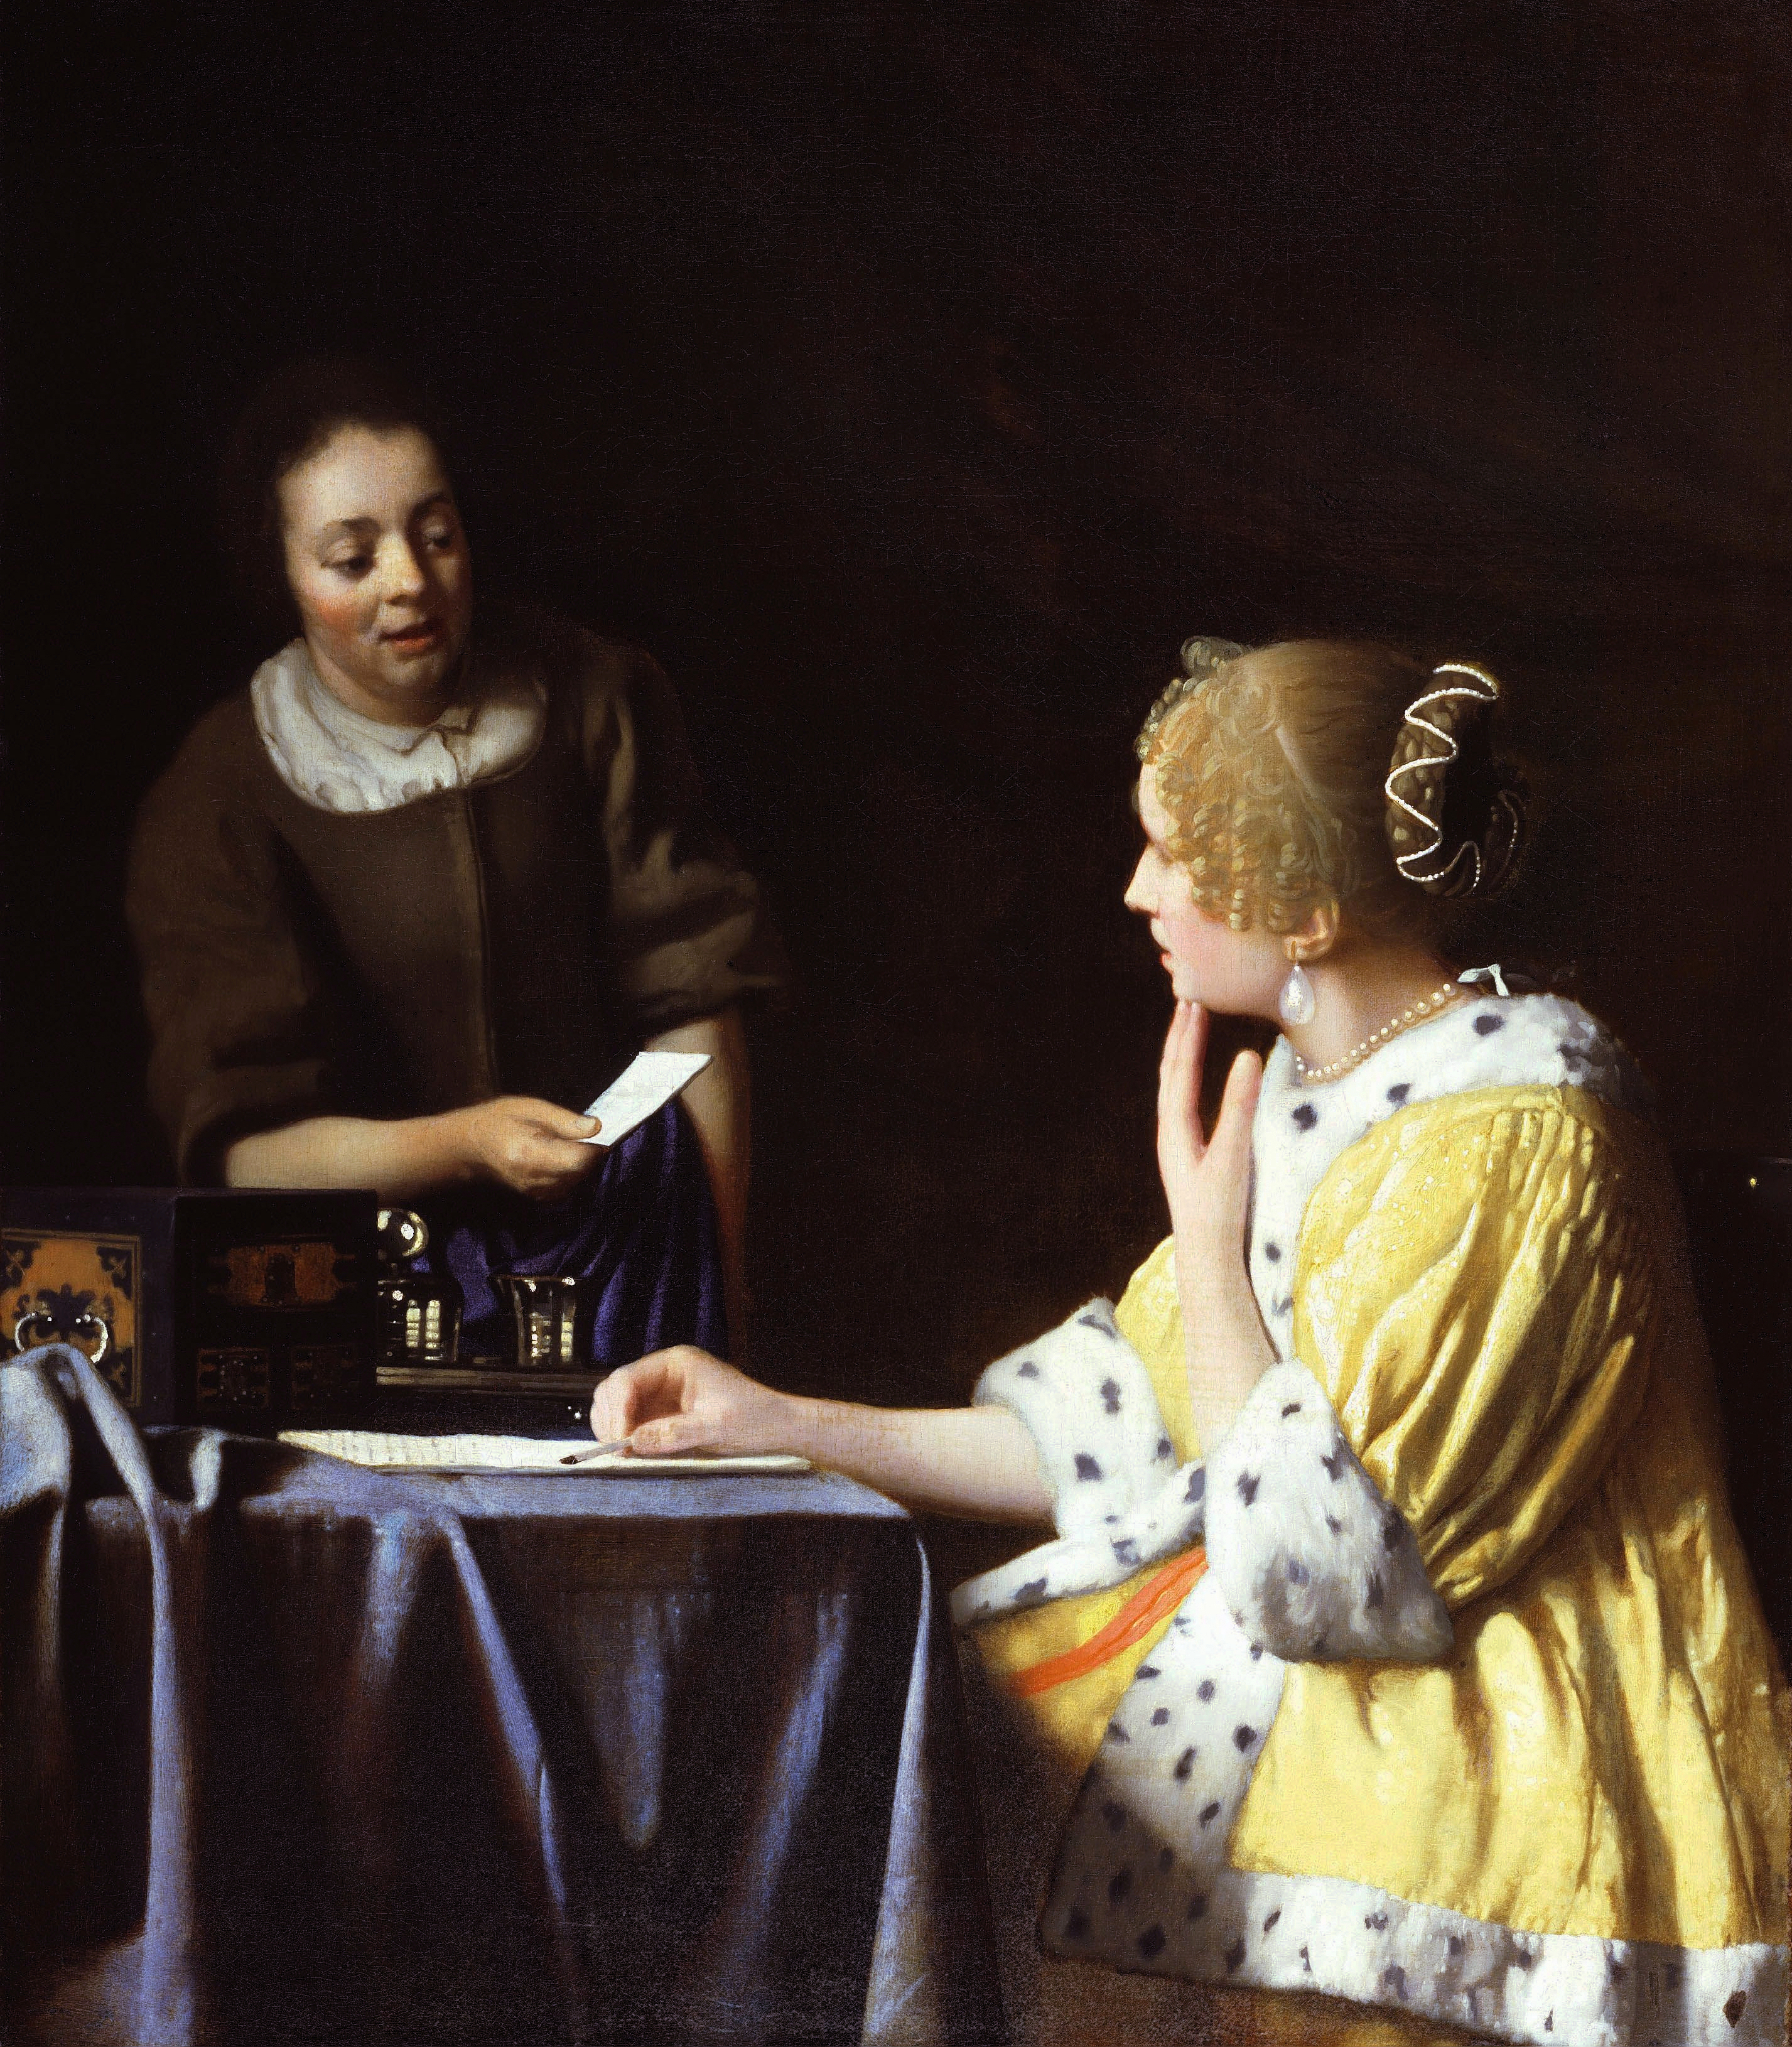 Senhora e Empregada Doméstica by Johannes Vermeer - 1666/1667 